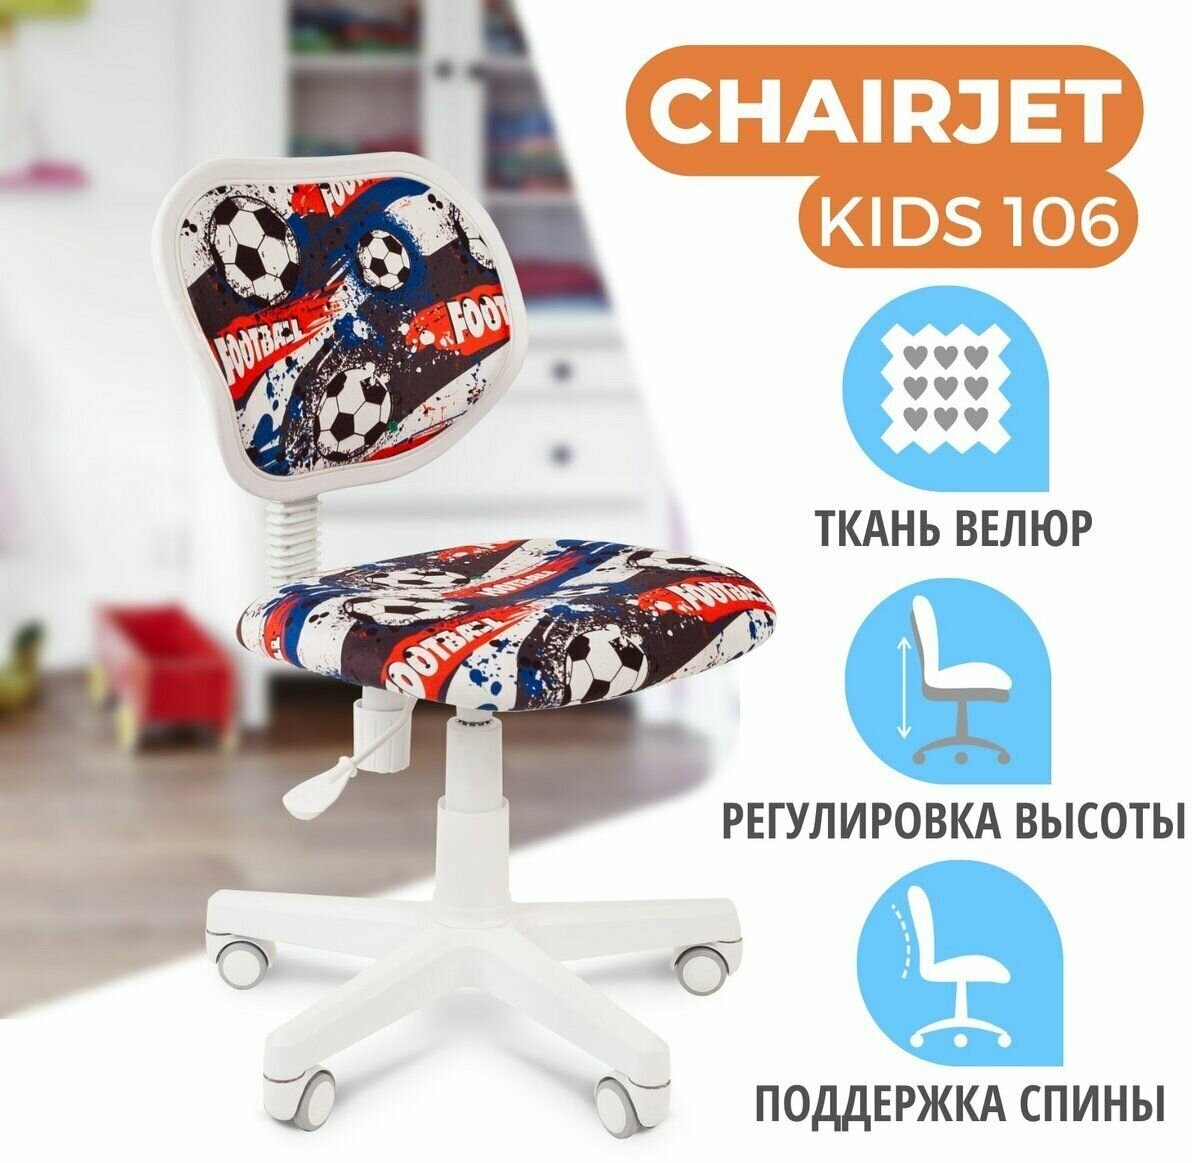 Детское компьютерное кресло Chairman Kids 106, обивка: текстиль